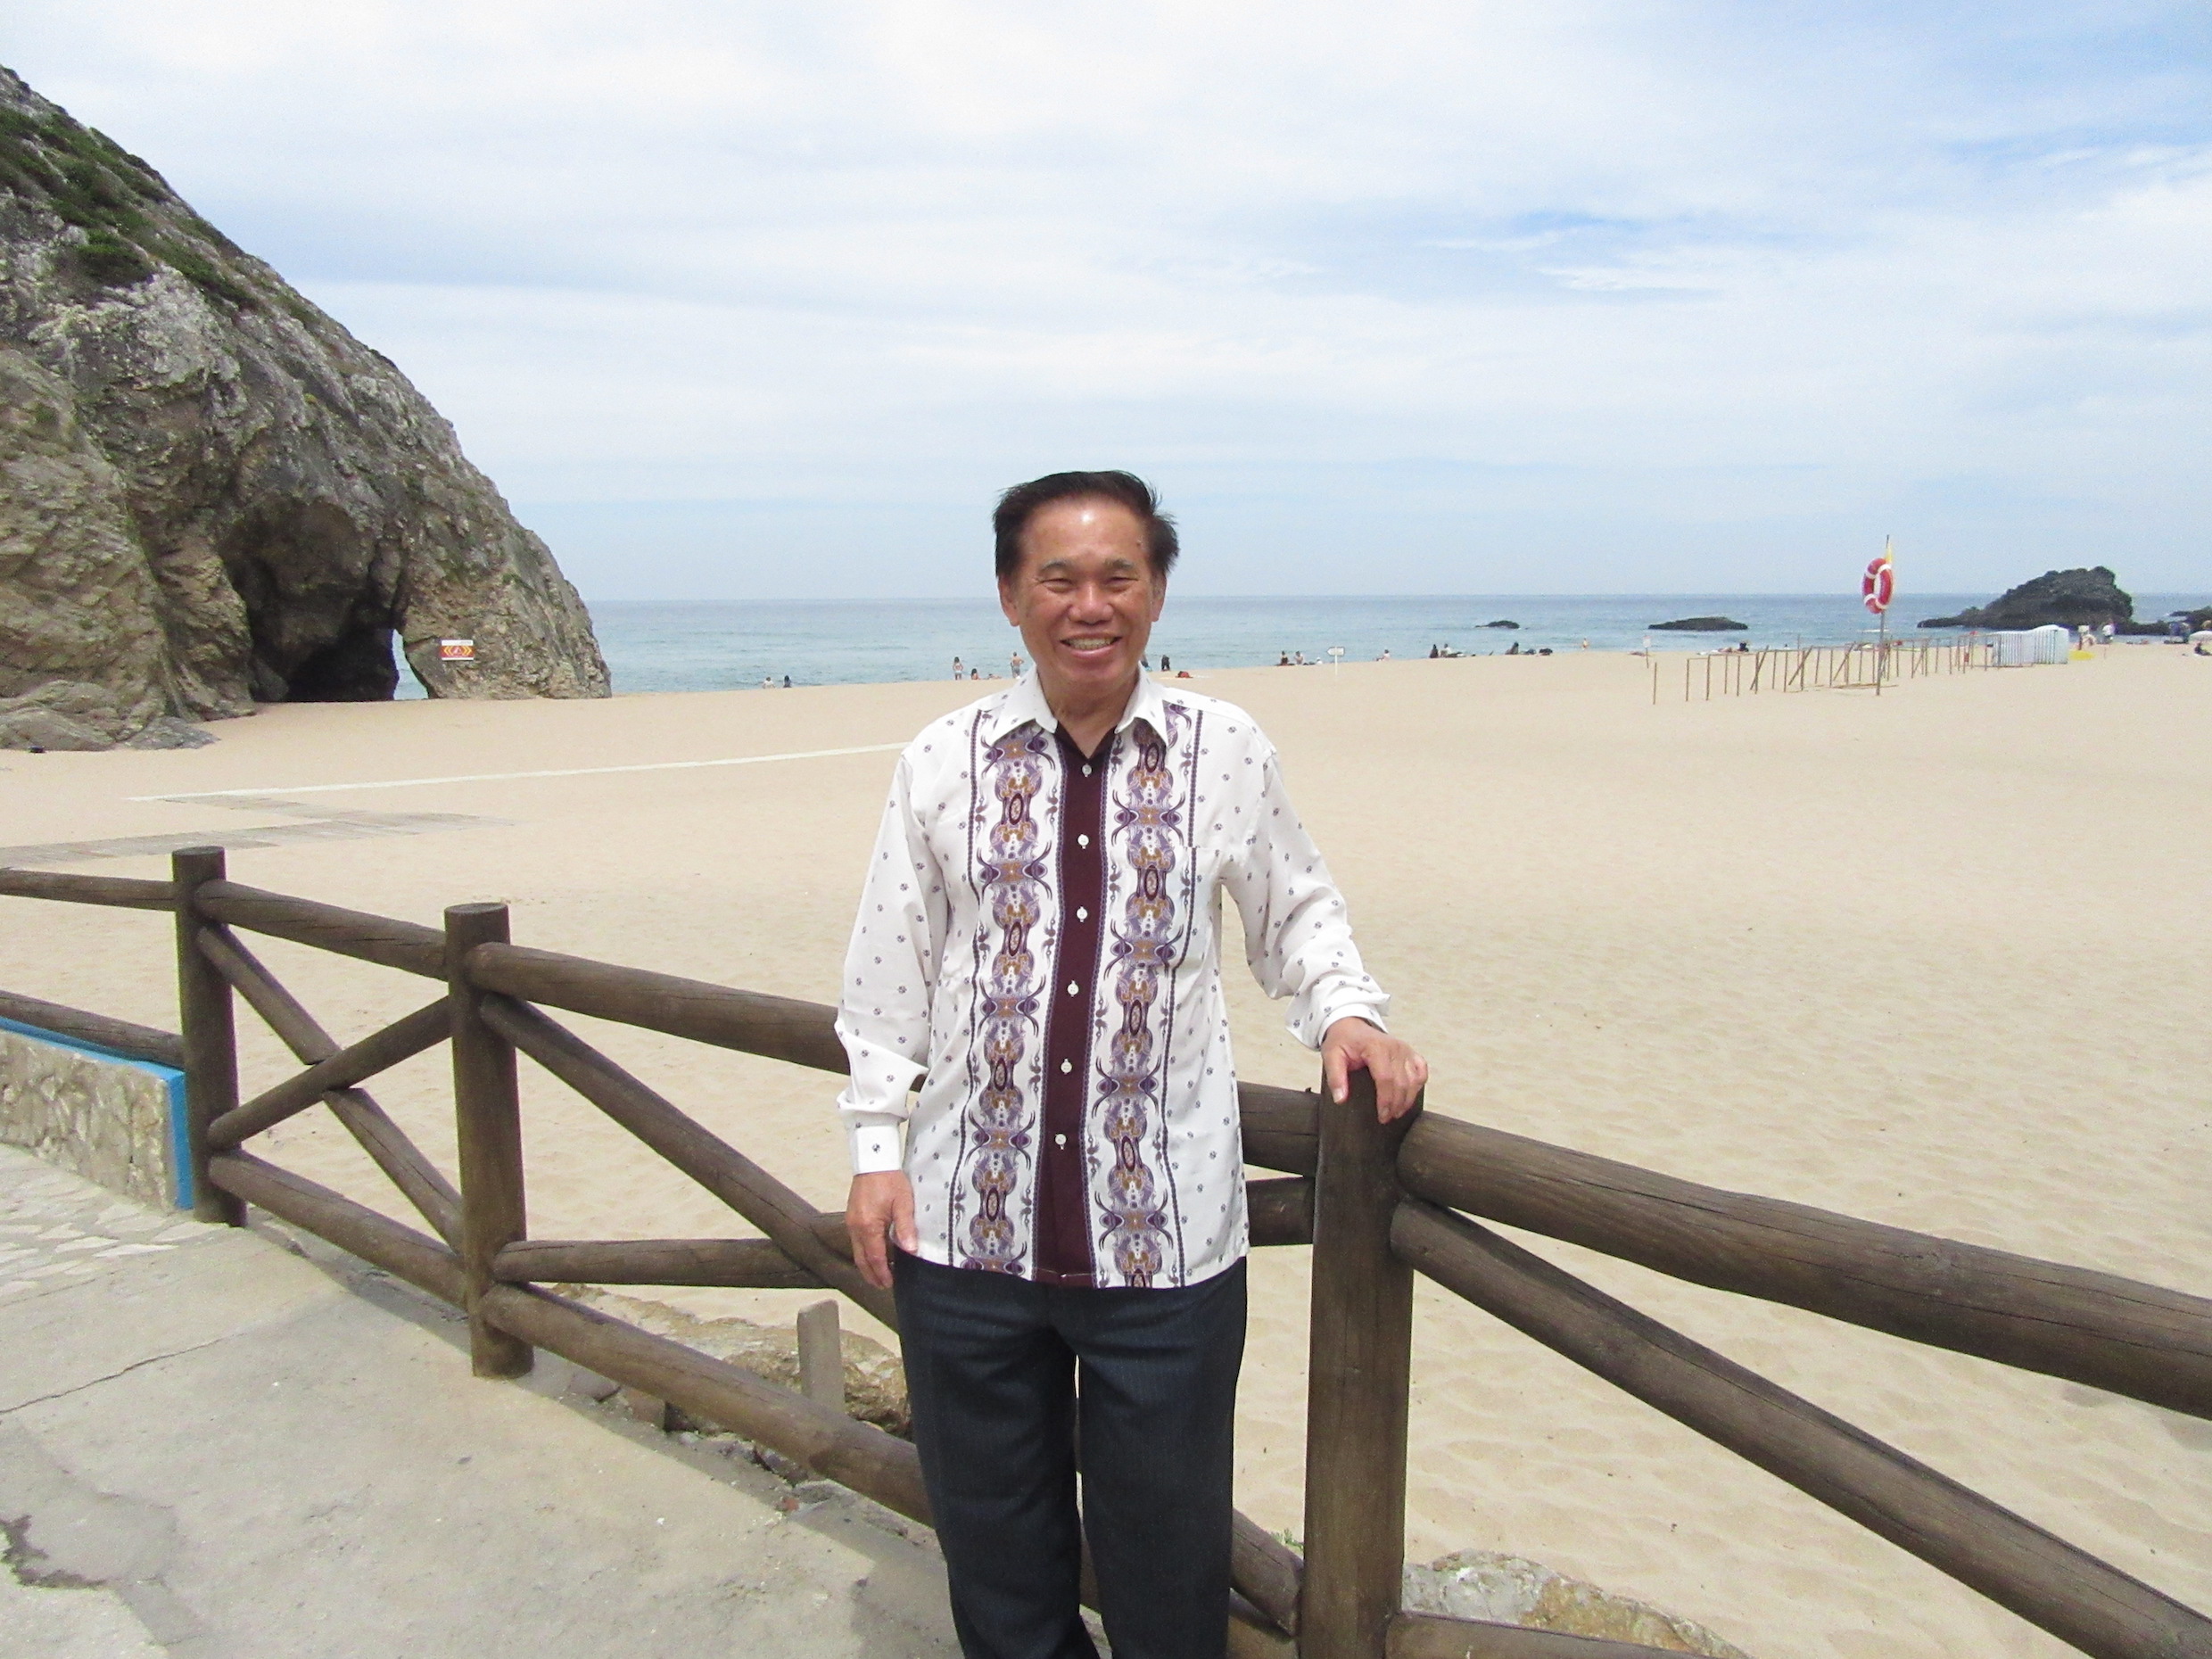 Grandmaster Wong at Praia Algarda